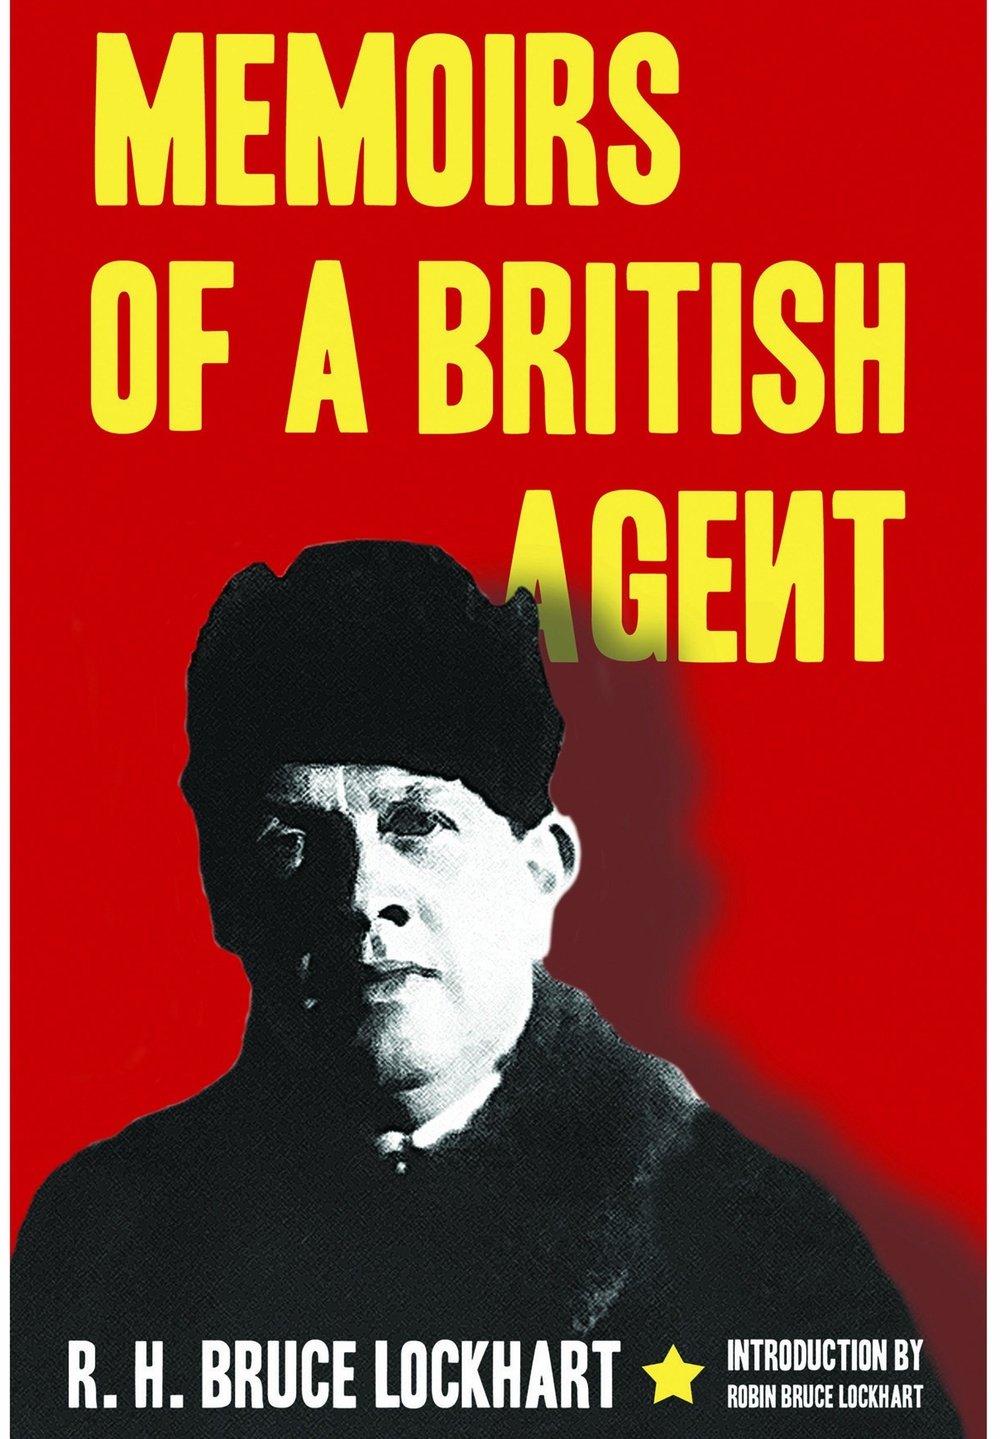 Portada de la autobiografía de Robert Lockart, 'Memorias de un agente británico'. FrontlineBooks